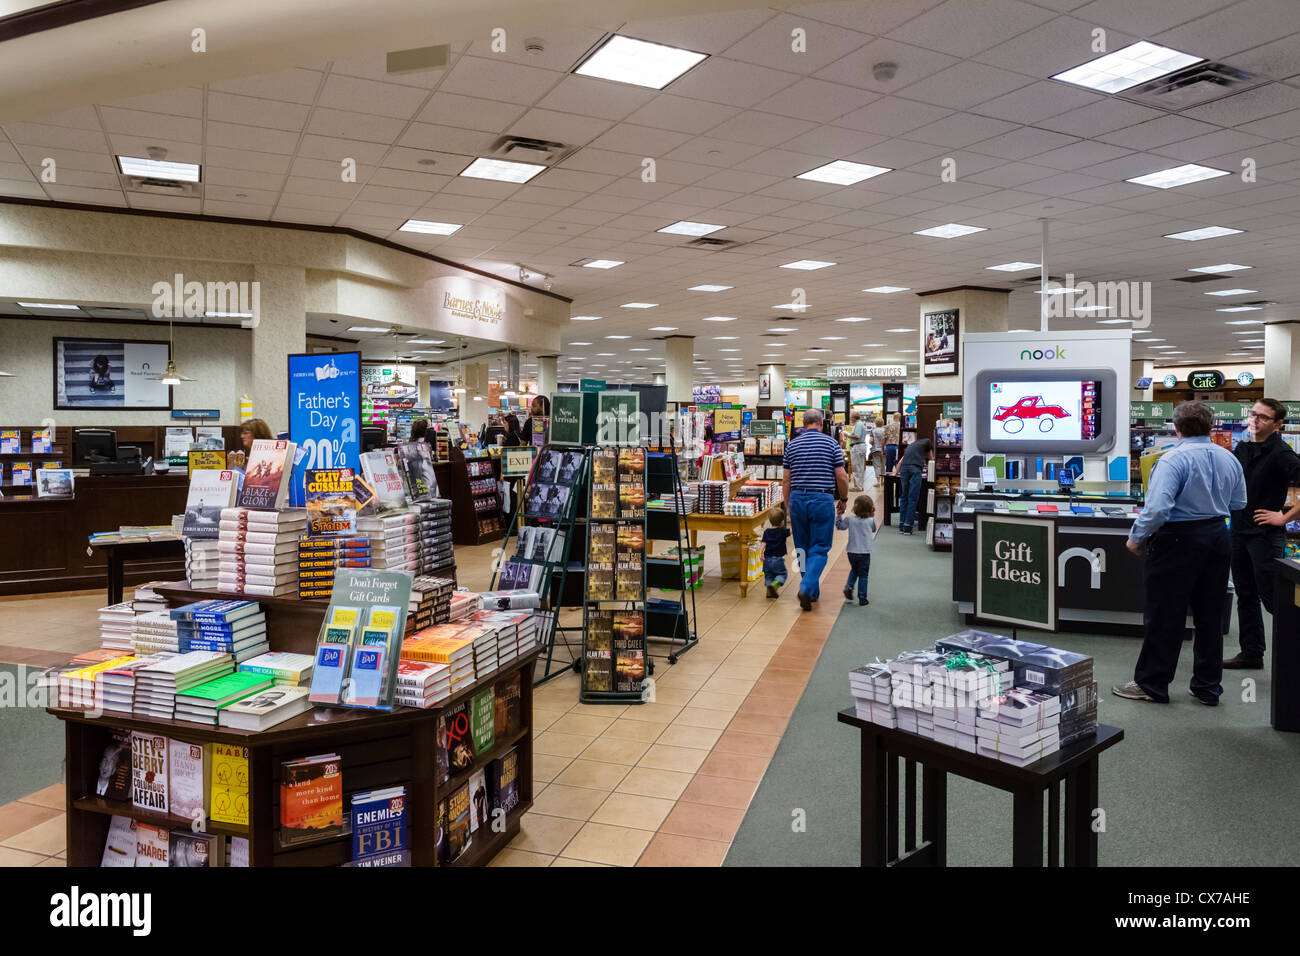 Barnes et noble book store dans le centre commercial Mall of America, Minneapolis, Minneapolis, Minnesota, USA Banque D'Images